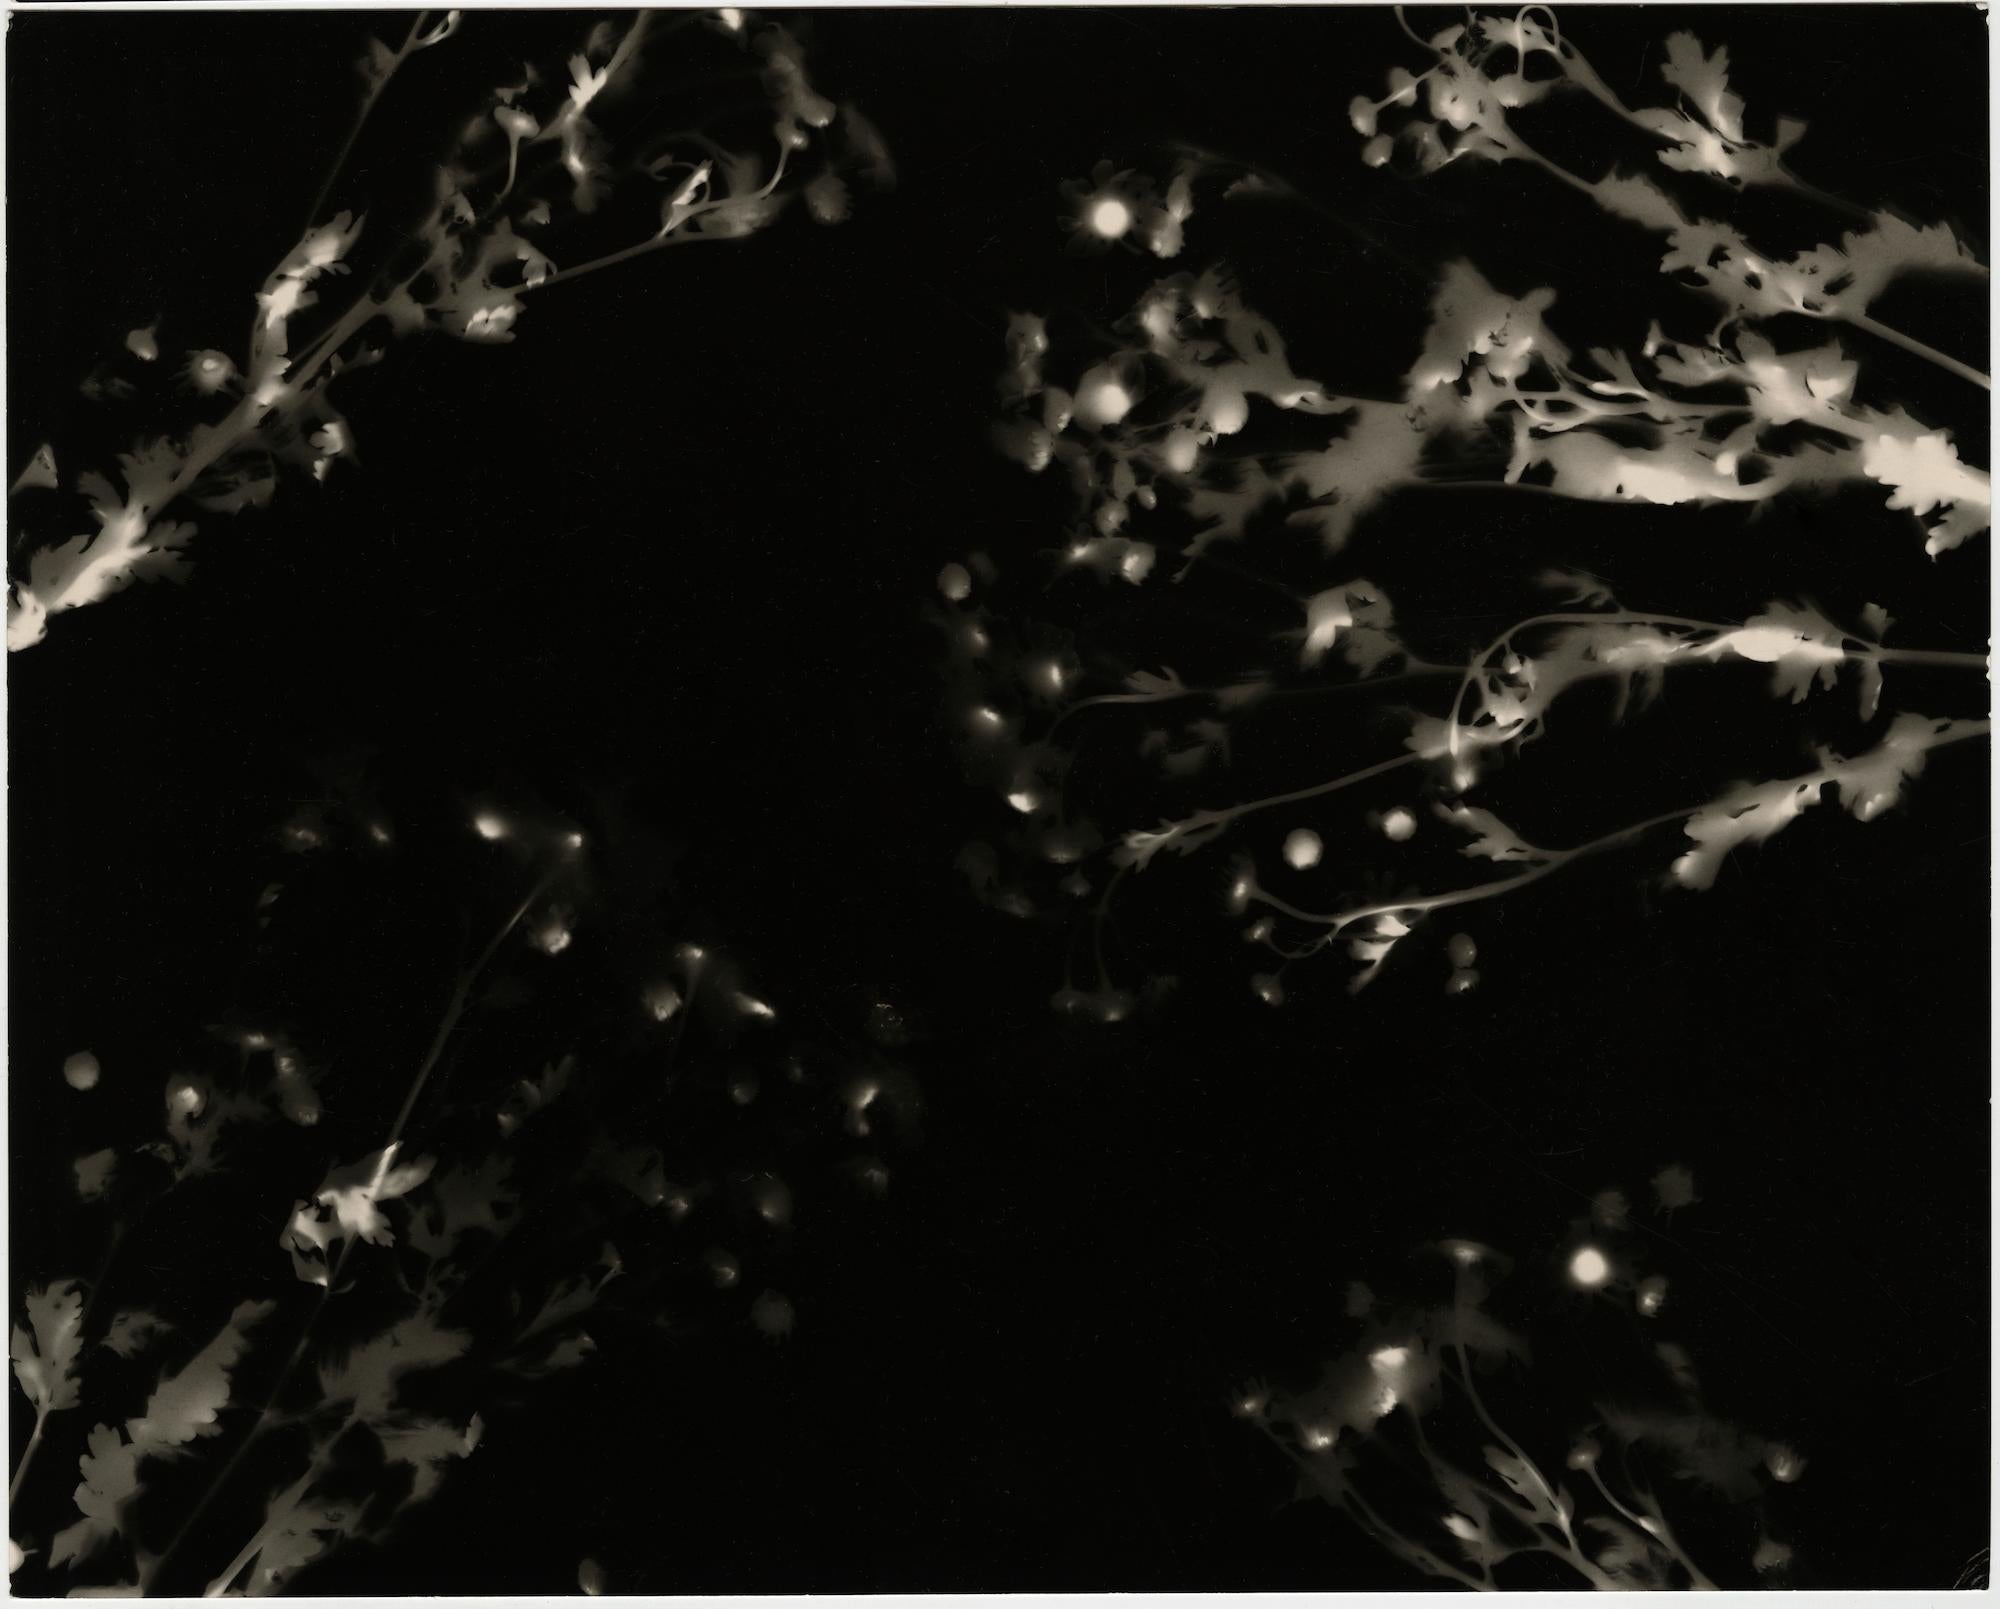 From the Ashes - photographie contemporaine unique en glatine argentique en noir et blanc